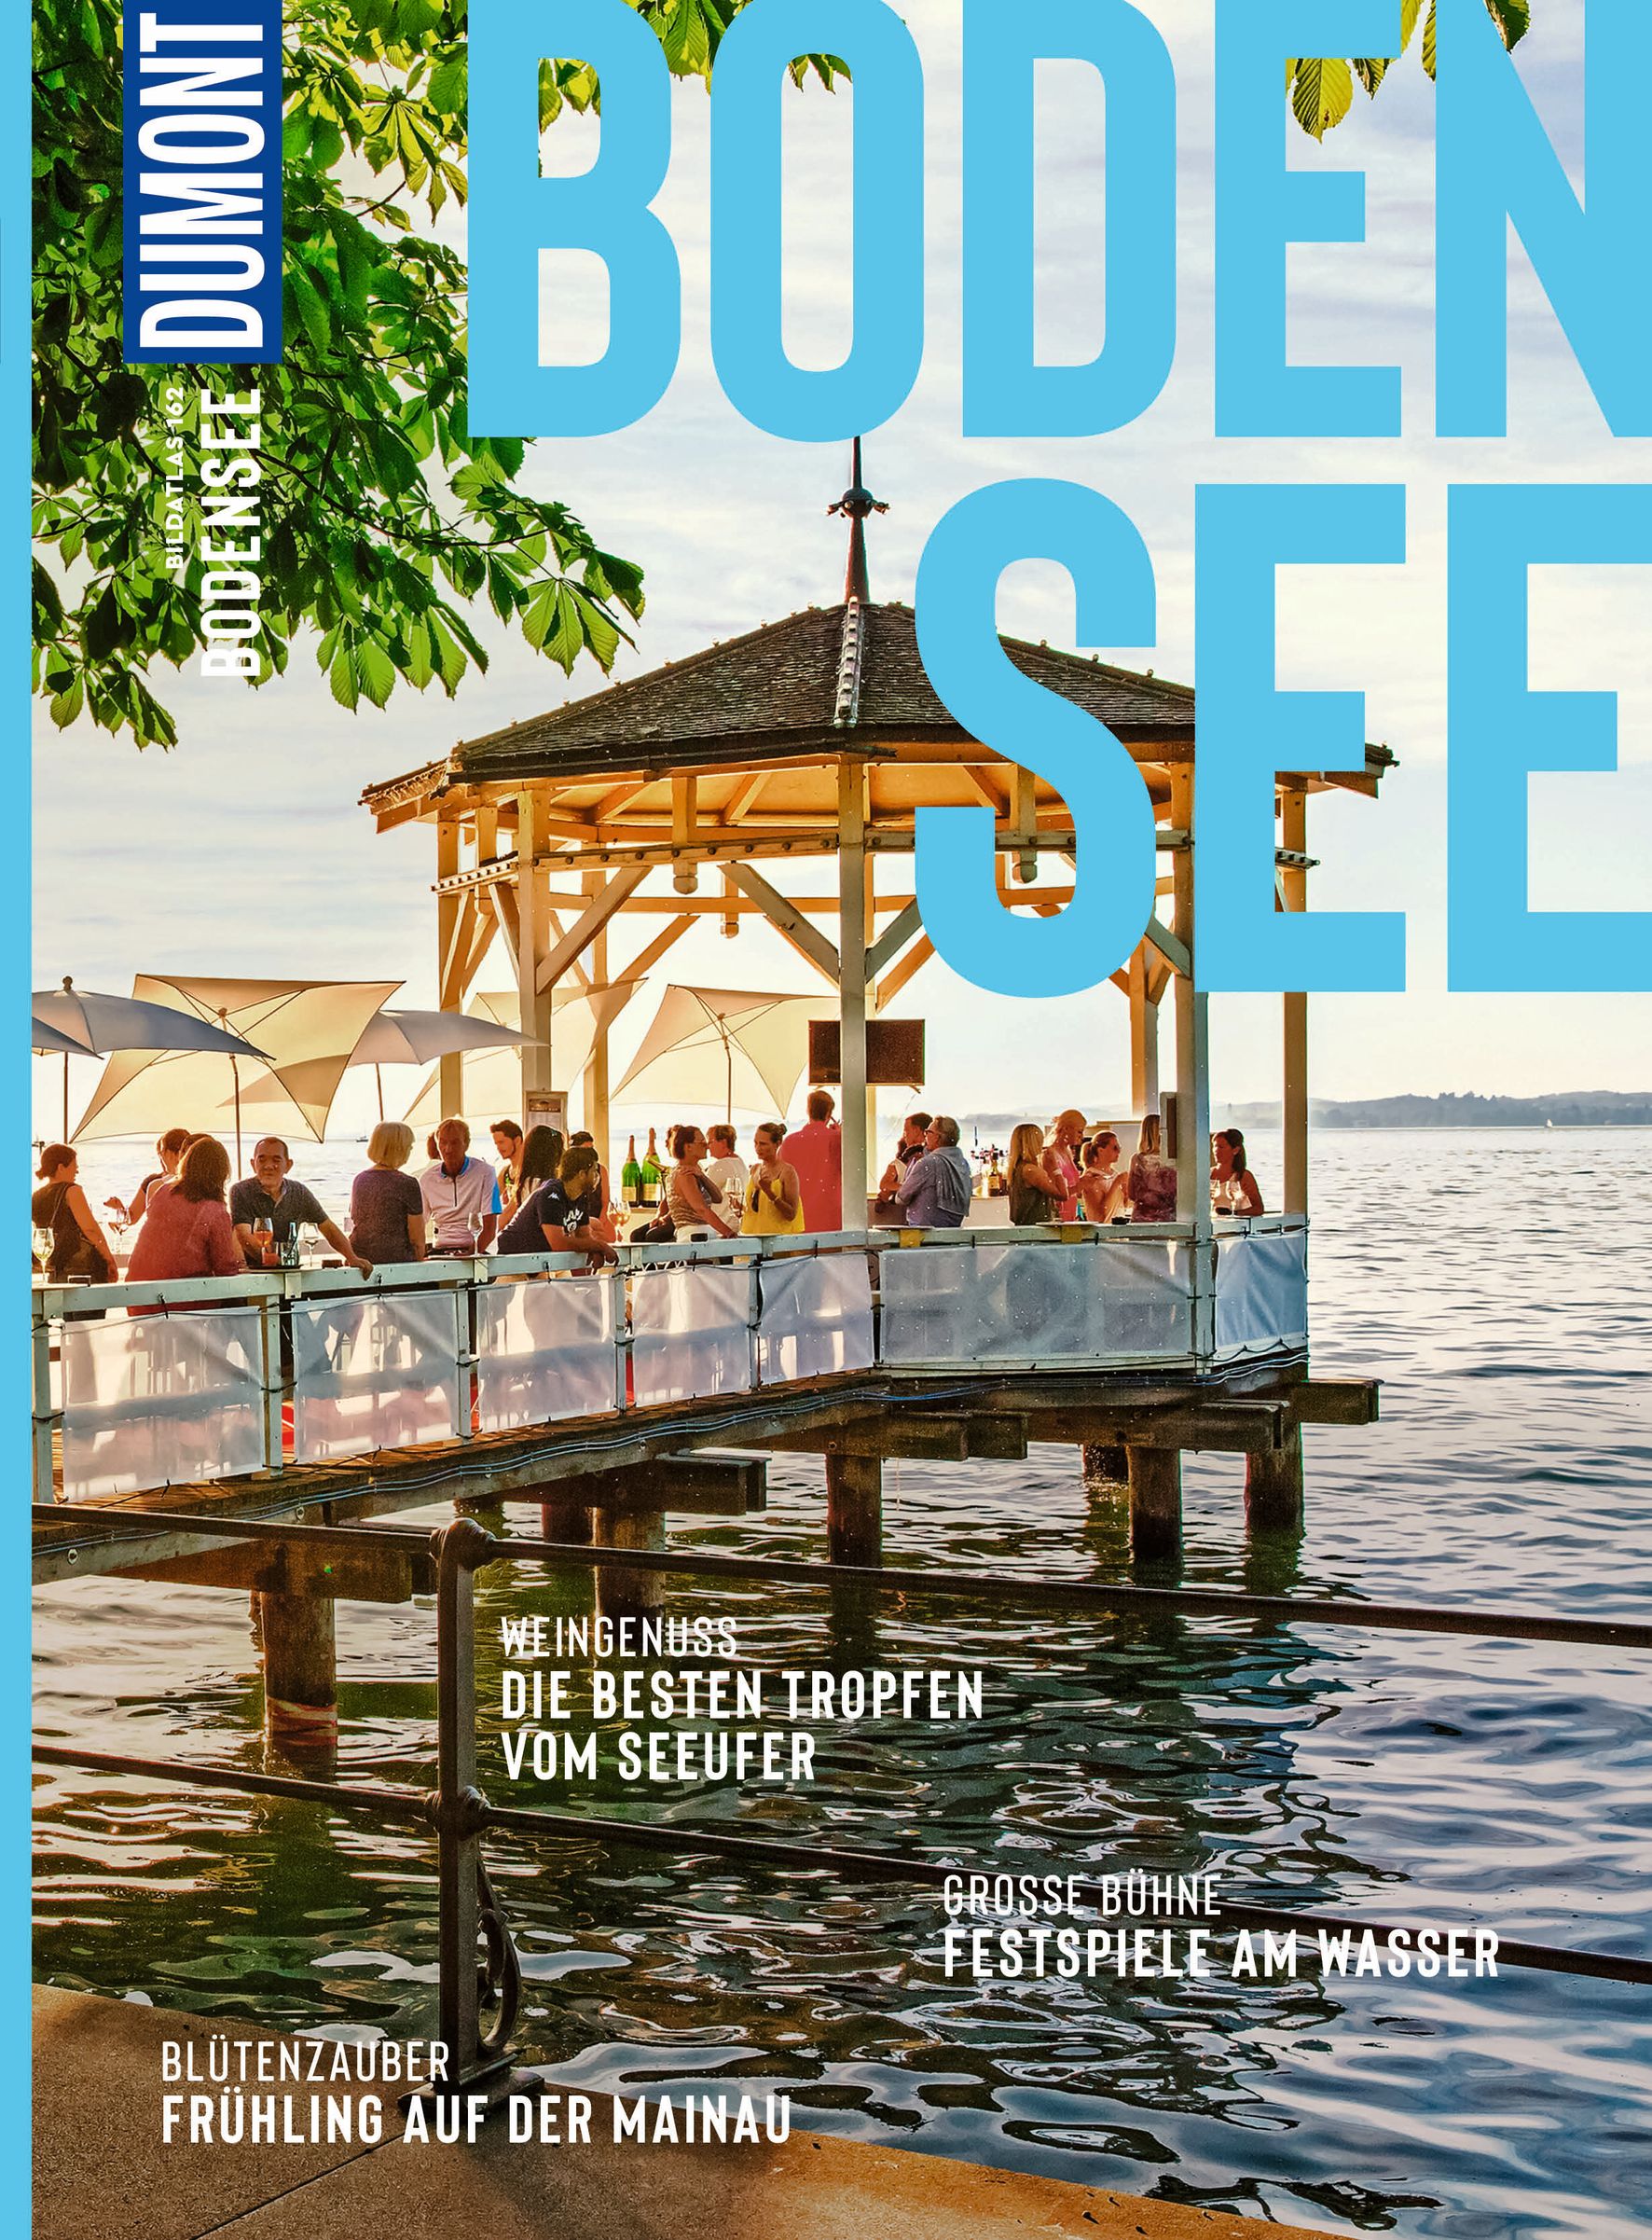 MAIRDUMONT Bodensee (eBook)